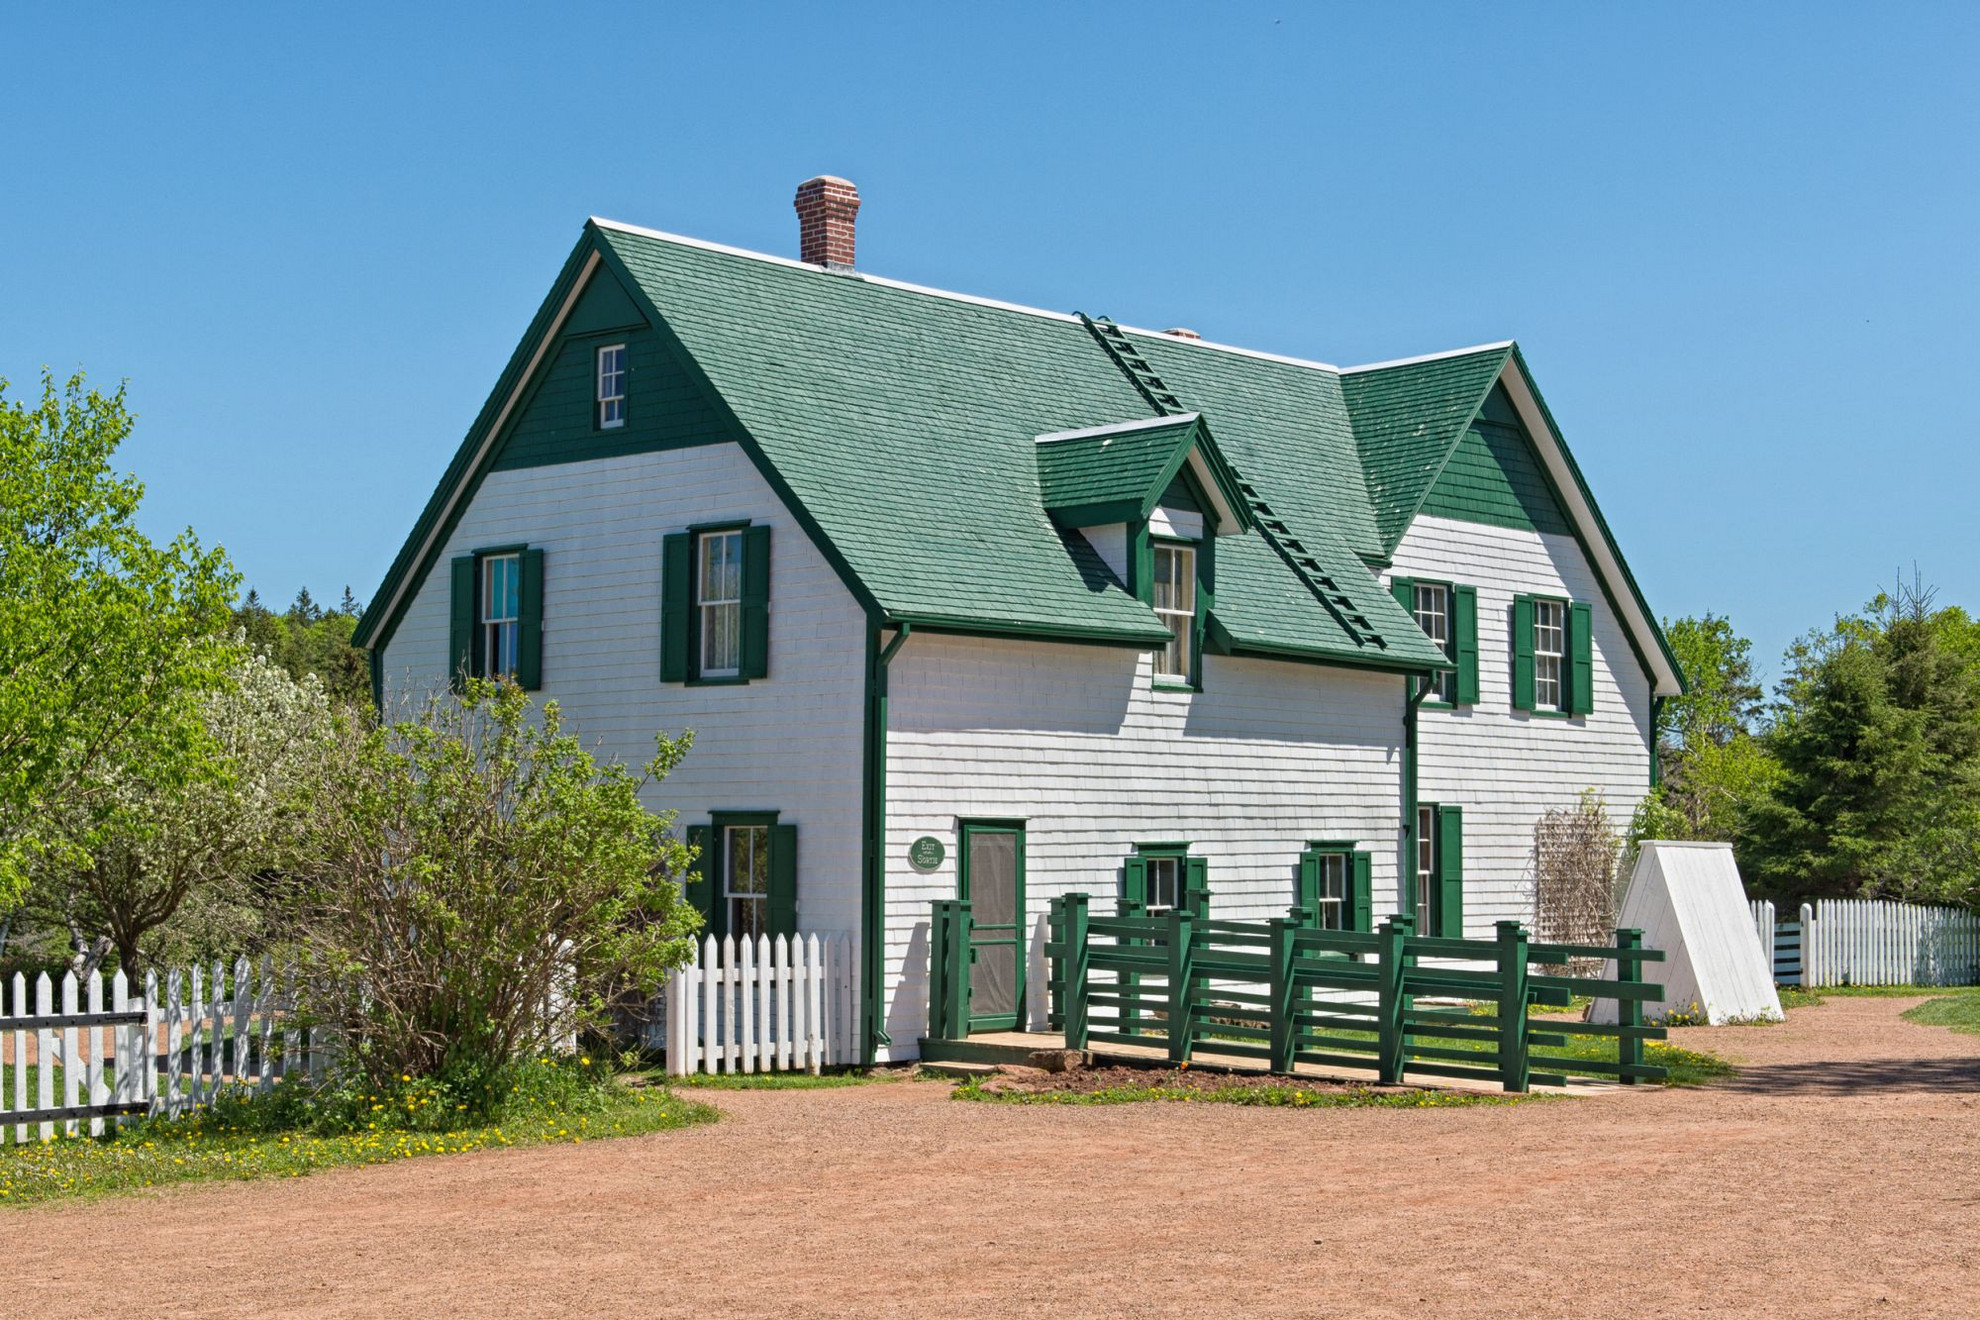 A legnagyobb helyi látványosság a Zöld orom (Green Gables) nevű ház